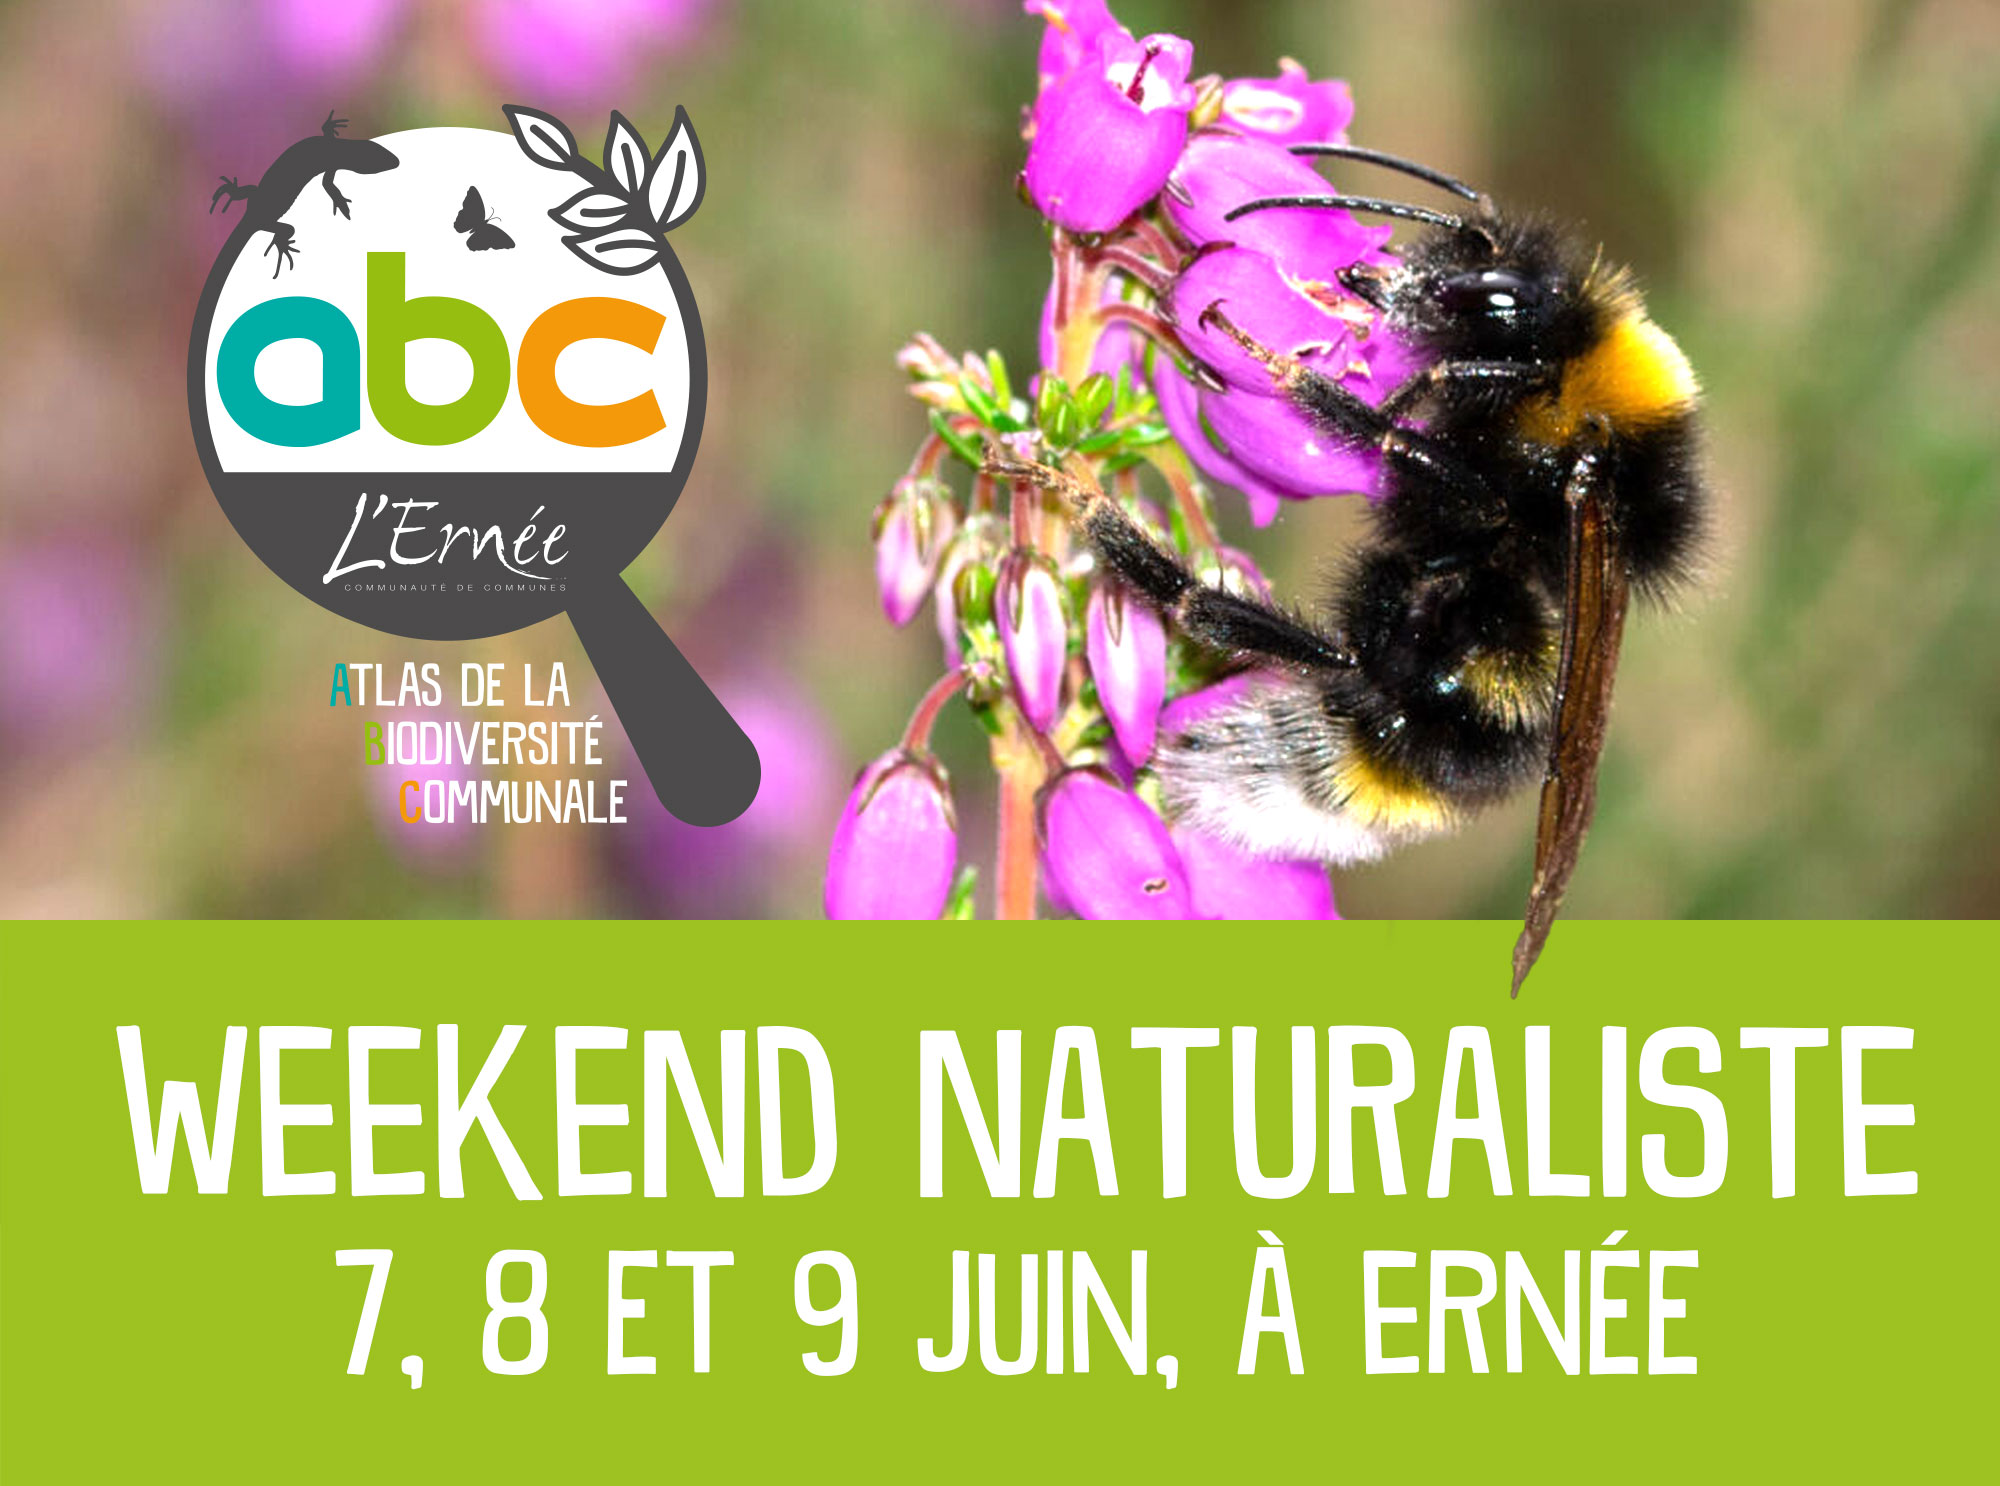 Week-end naturaliste à Ernée - Atlas de la Biodiversité (inter)Communal